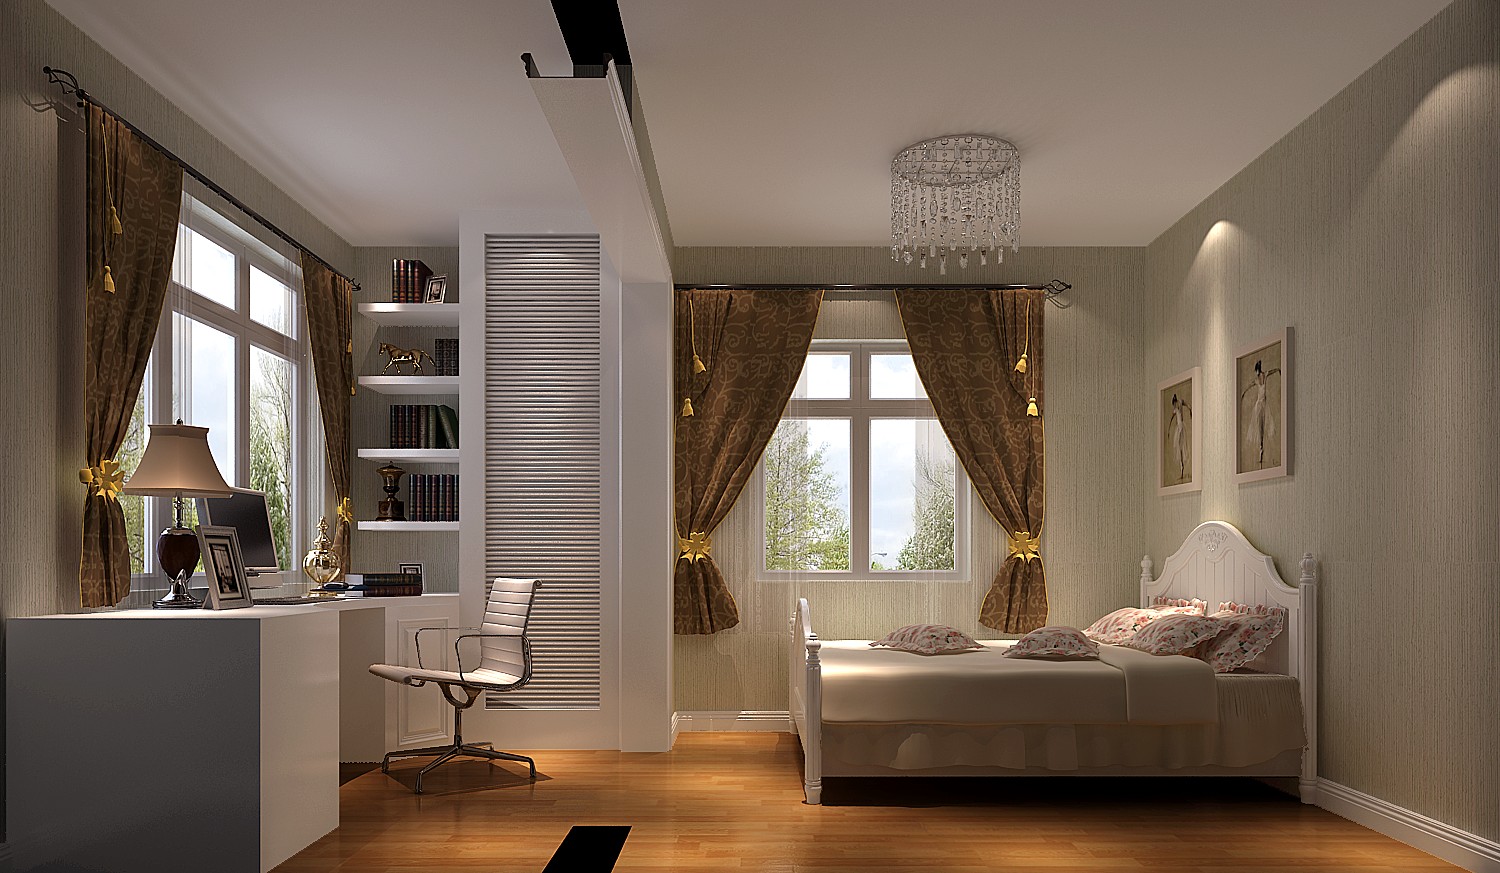 简约 公寓 美观 温馨 舒适 漂亮 卧室图片来自北京高度装饰设计王鹏程在k2百合湾壹号院简约风格装饰设计的分享